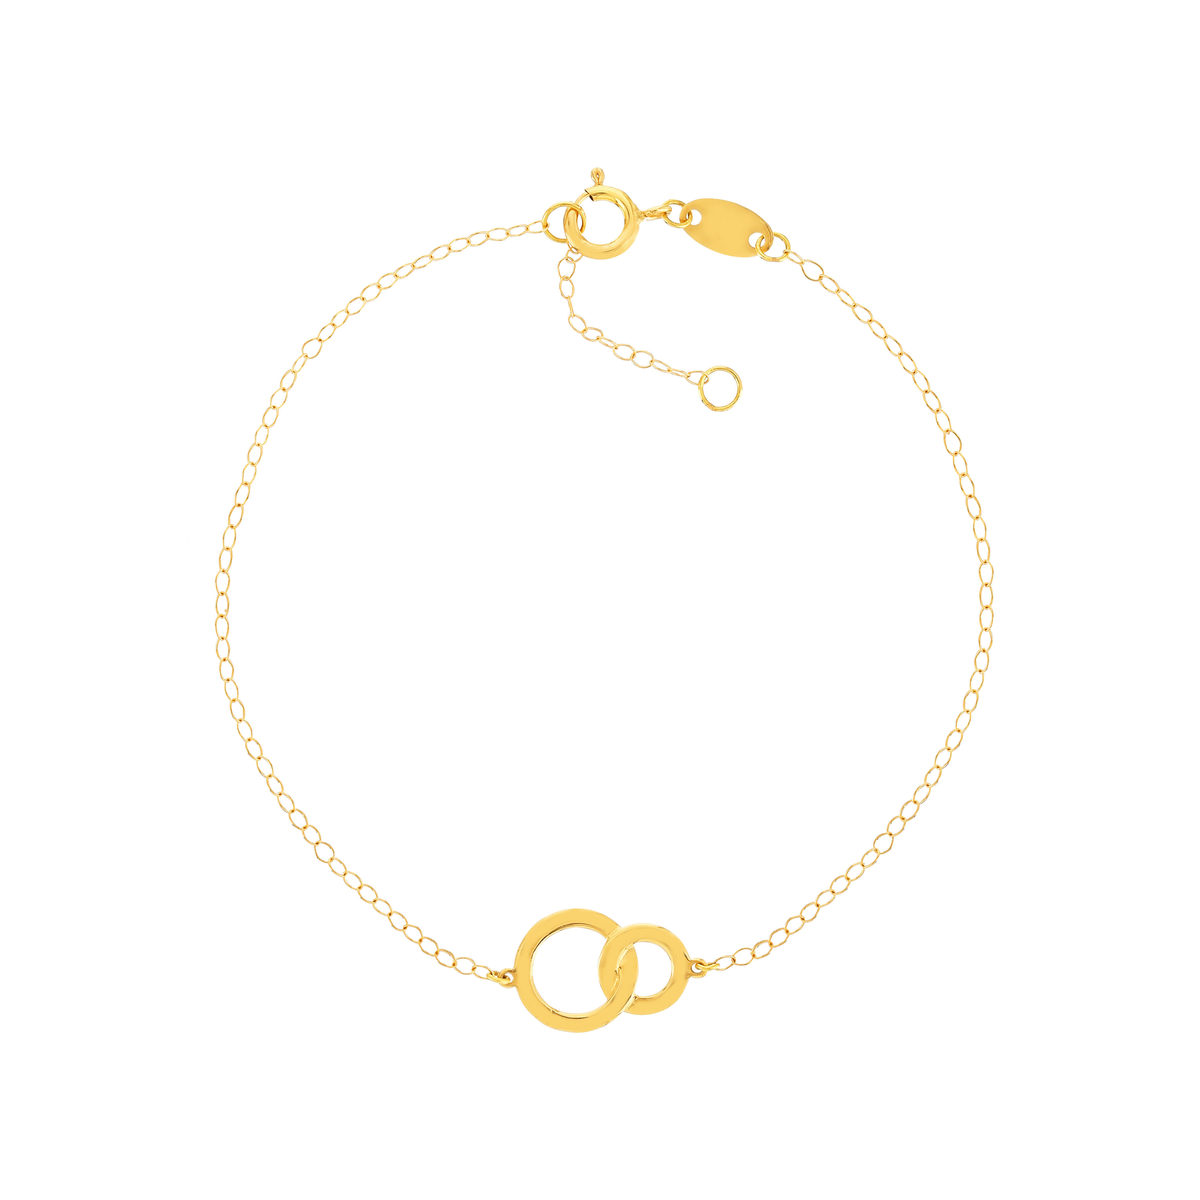 Bracelet or jaune 750 18 cm motif 2 anneaux entrelacés